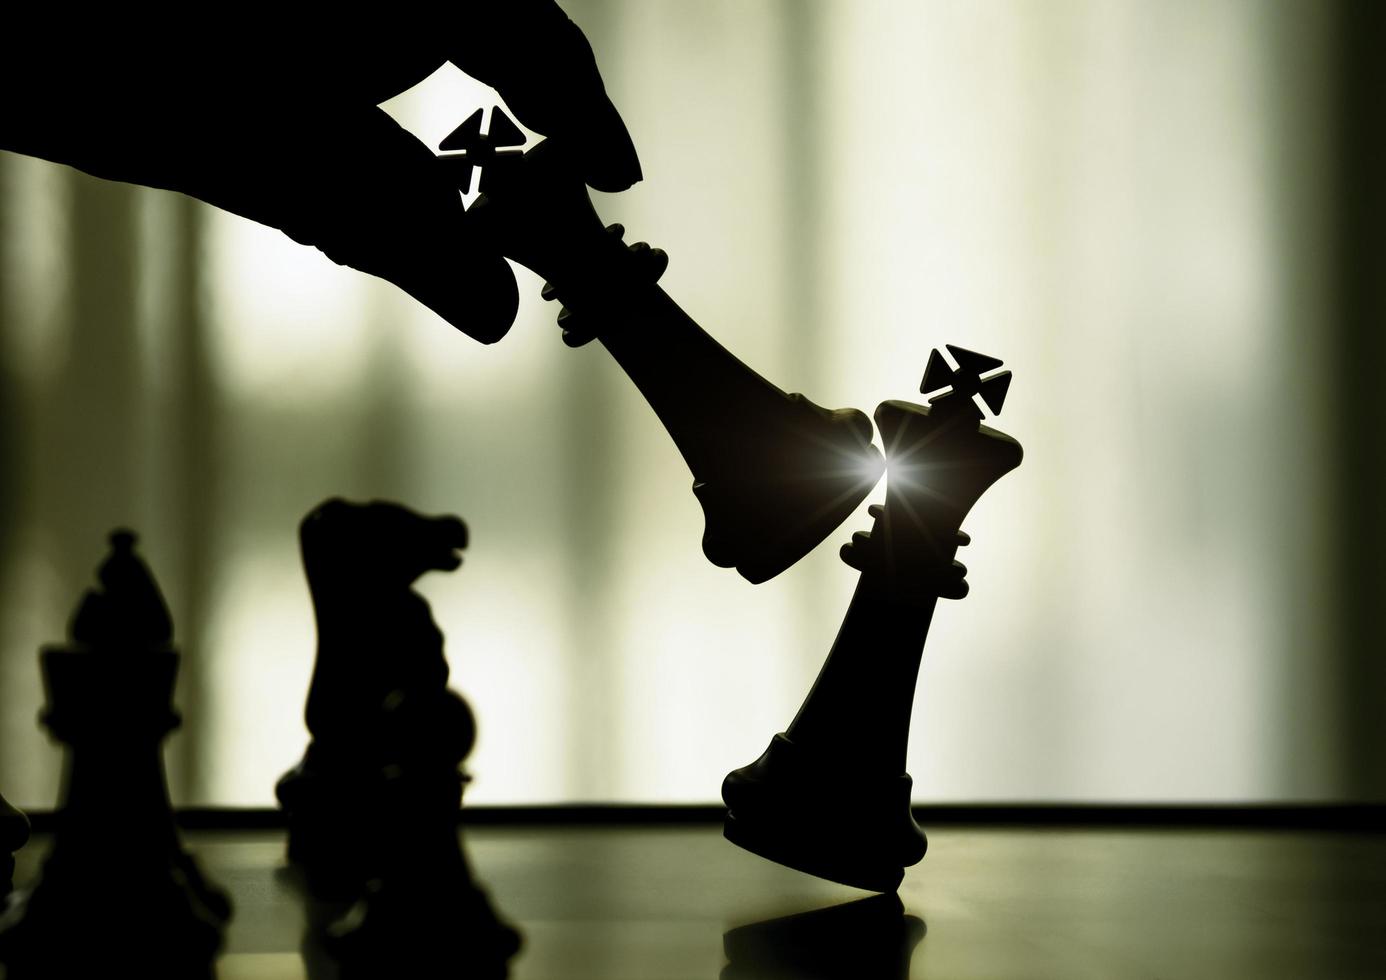 hand som håller svart kung attack vit kung av schack silhuetter strid ombord. svart kung är ledare för att slåss med lagarbete till seger. ledare, strategi och schackmatt koncept för framgång. foto